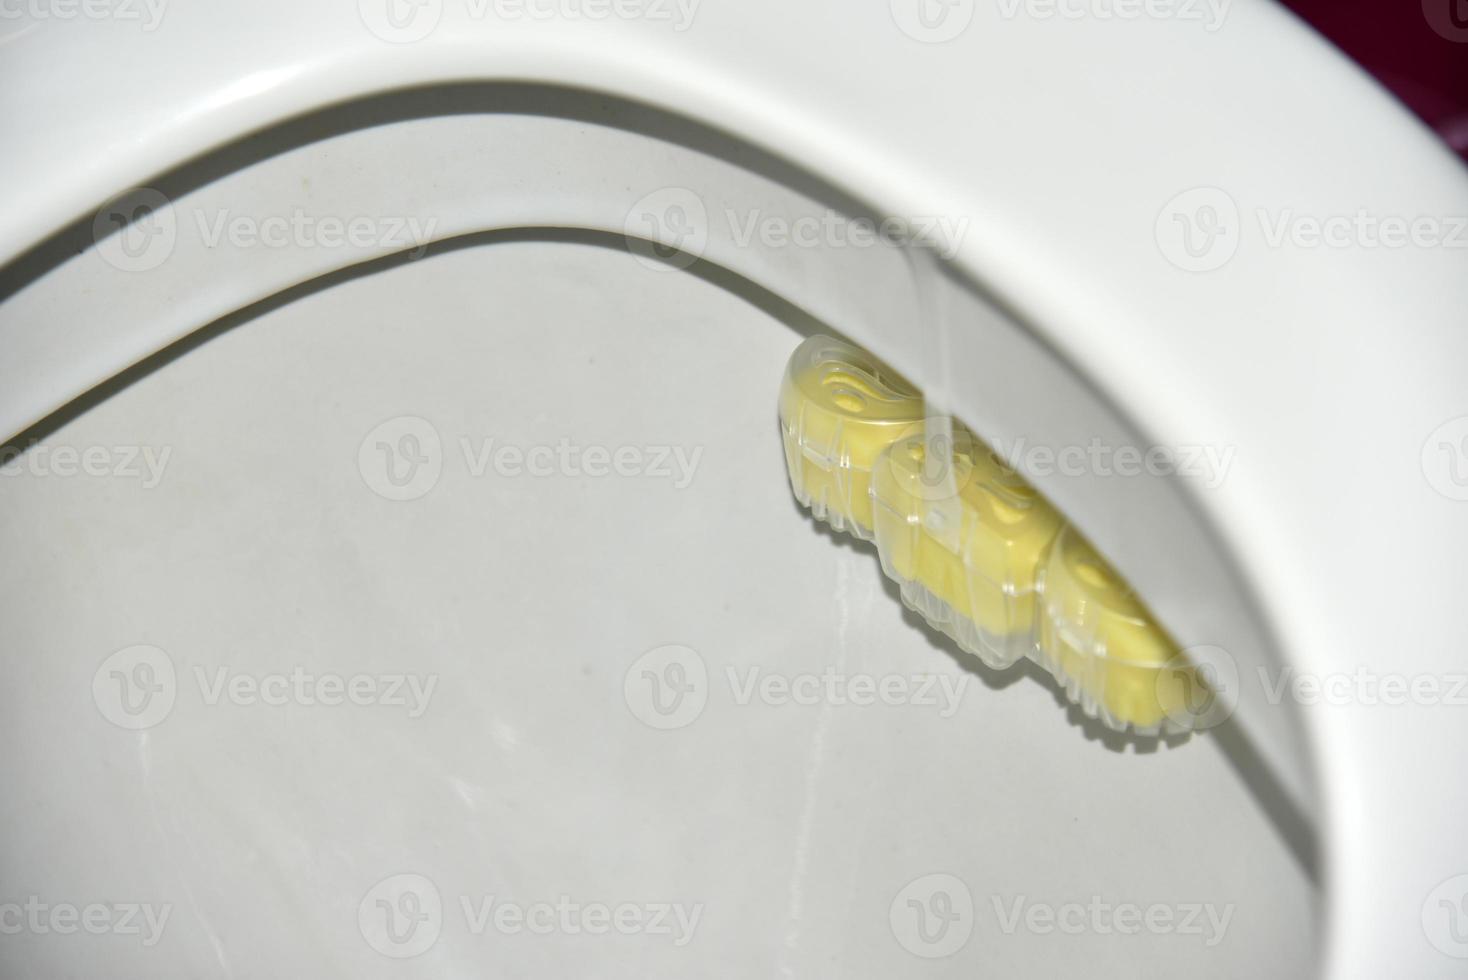 Cleaning suspension toilet bowl cleaner lemon freshness photo